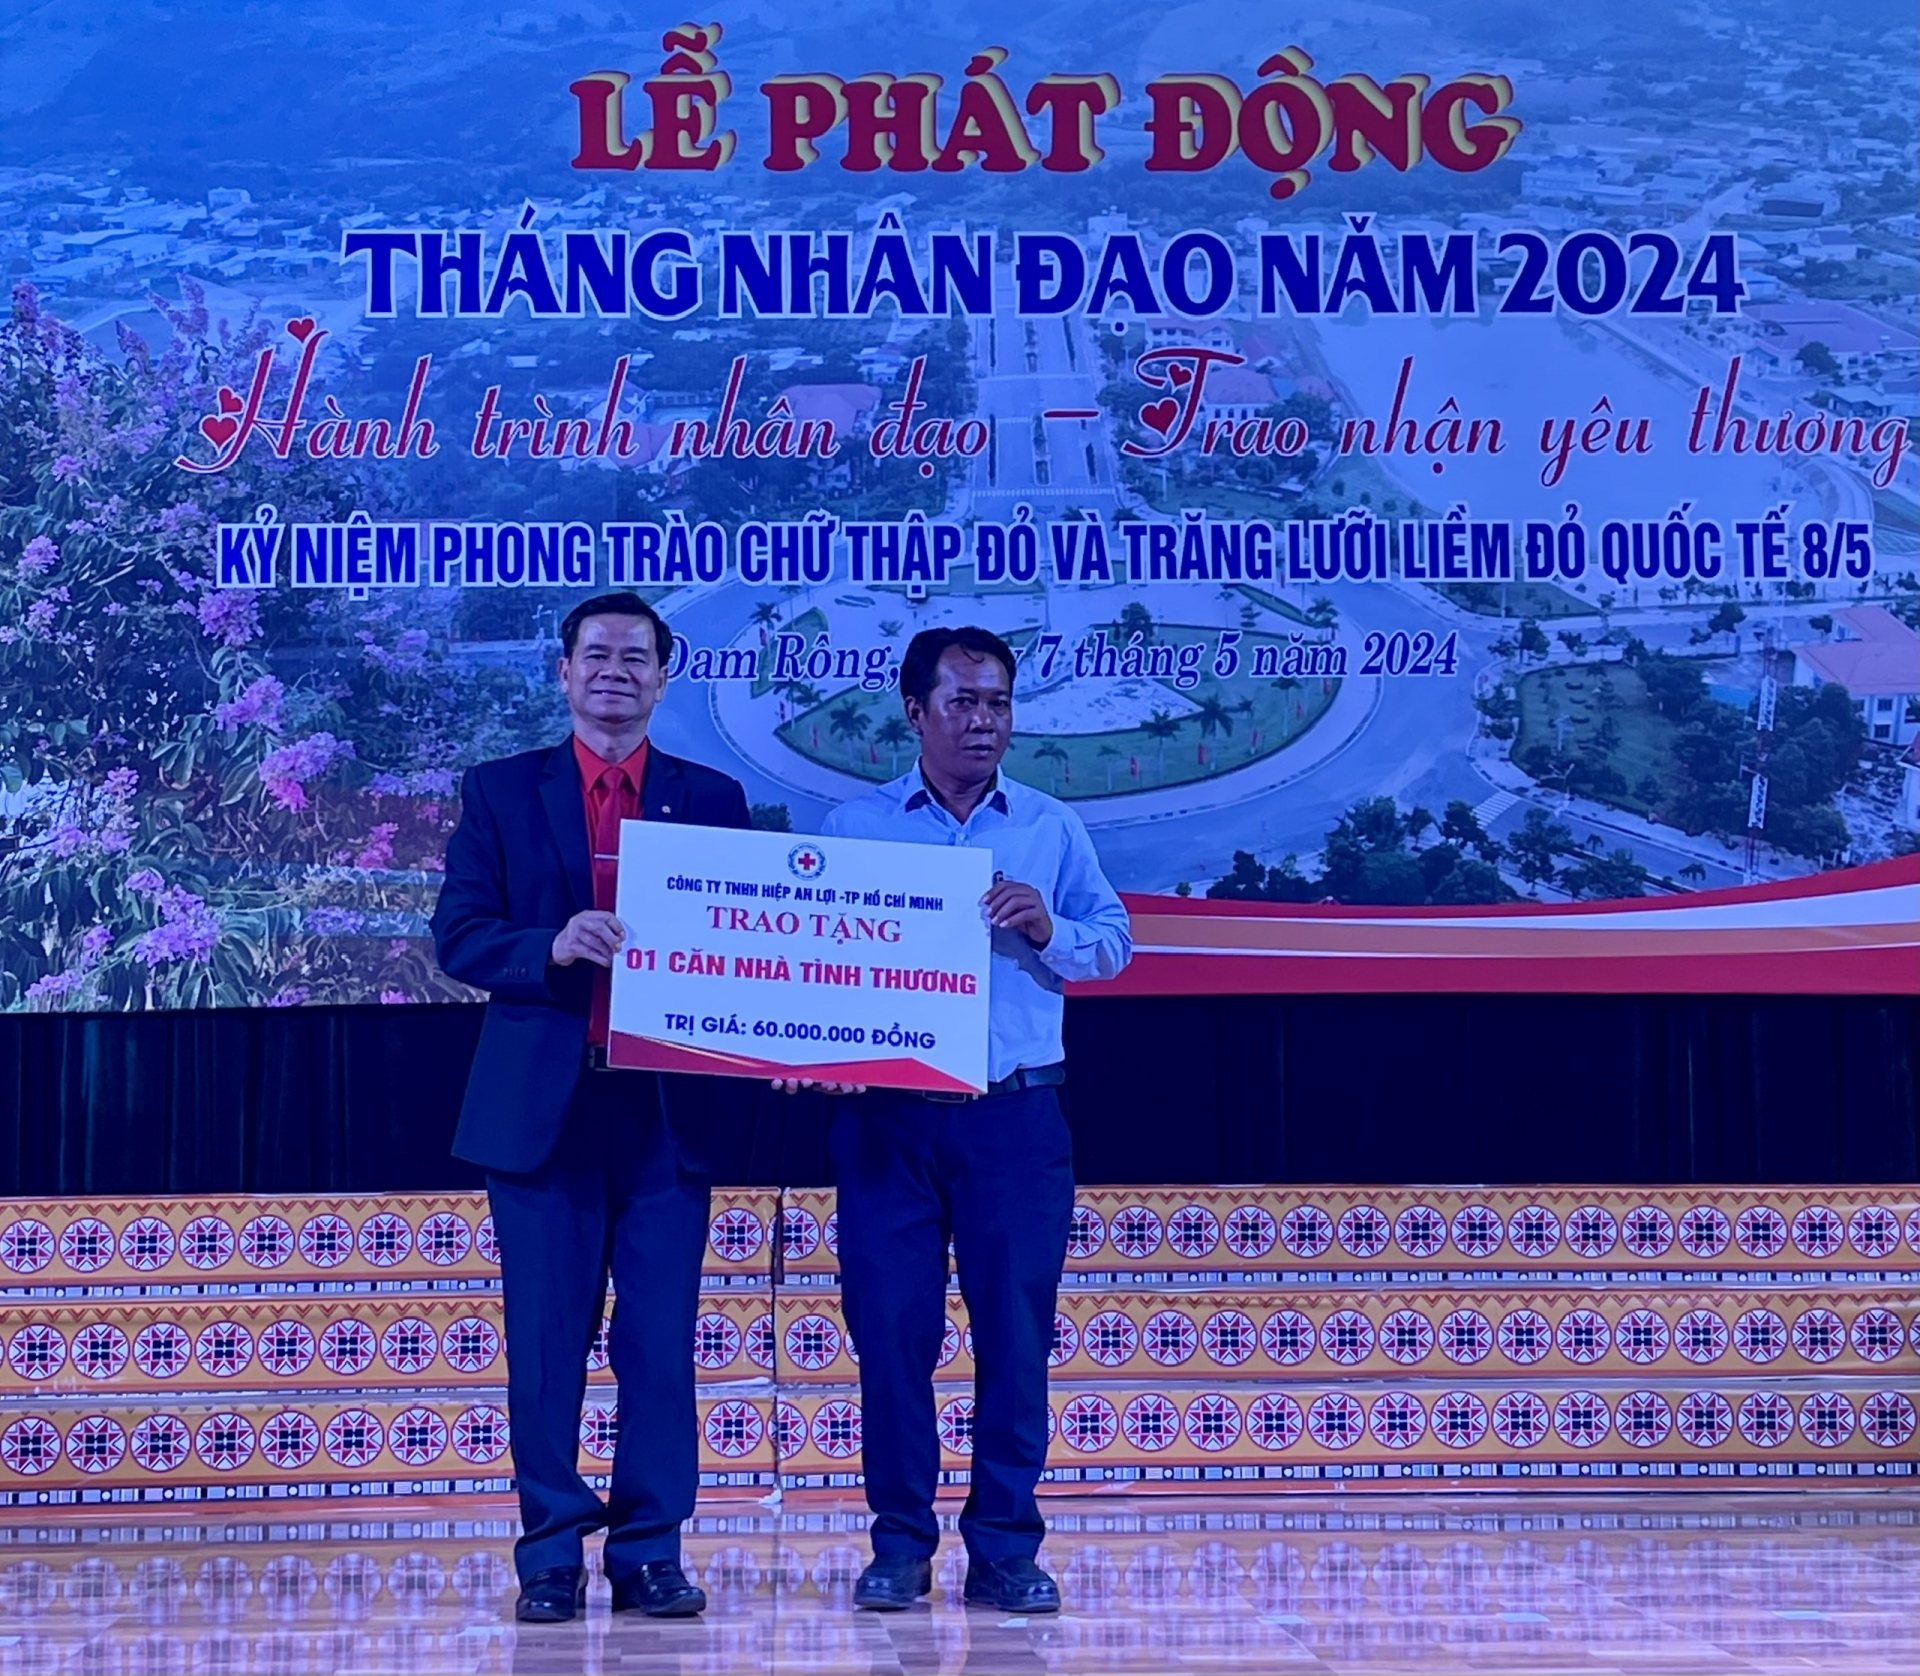 Trao tài trợ xây nhà tình thương Chữ thập đỏ tại huyện Đam Rông